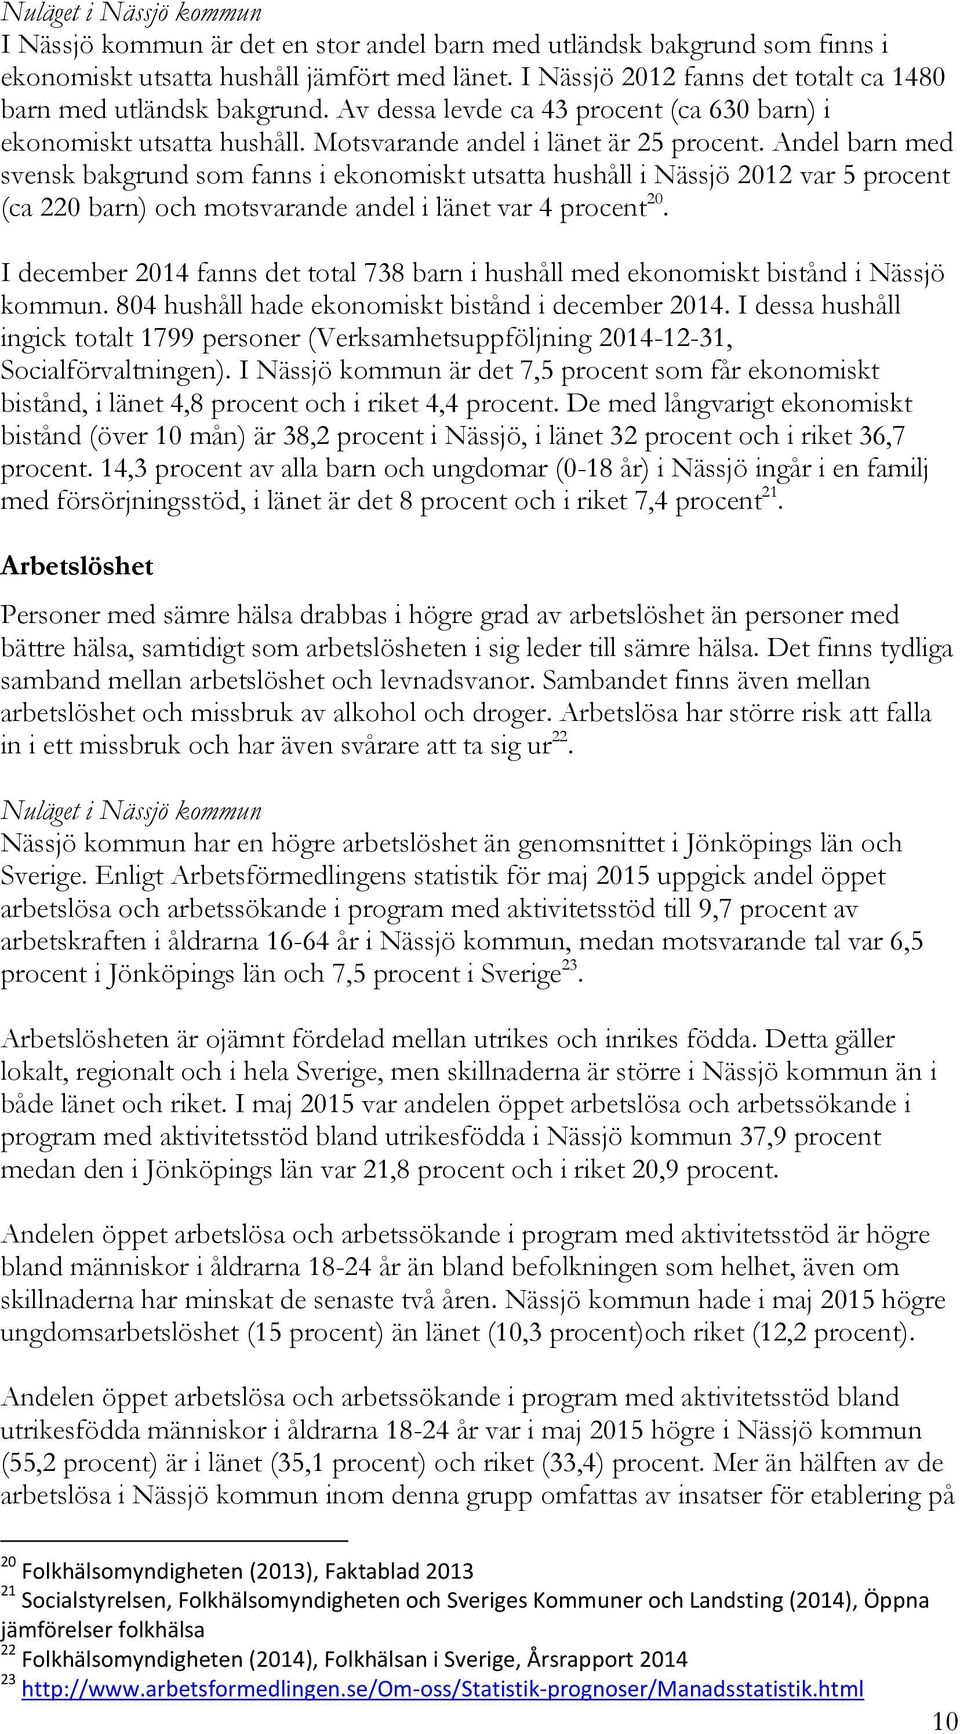 Andel barn med svensk bakgrund som fanns i ekonomiskt utsatta hushåll i Nässjö 2012 var 5 procent (ca 220 barn) och motsvarande andel i länet var 4 procent 20.